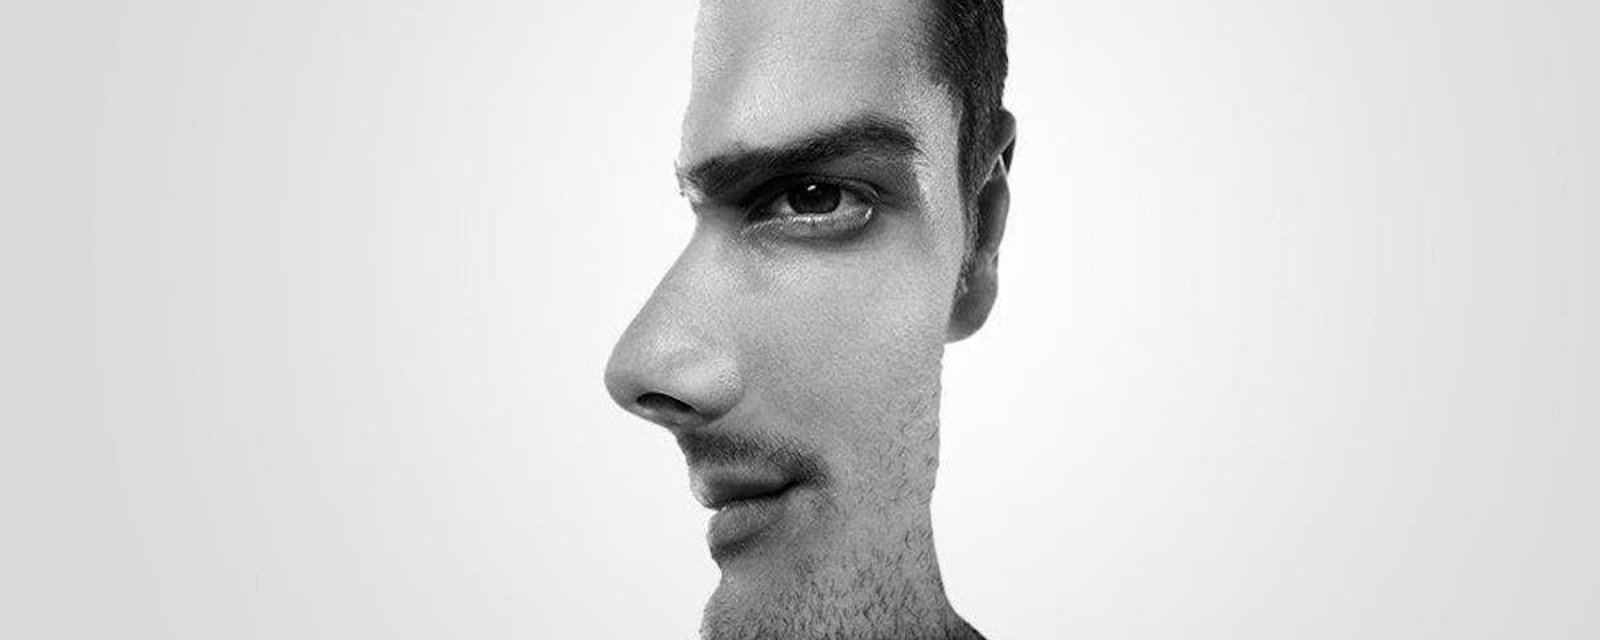 Voyez-vous l'homme de face ou de profil?